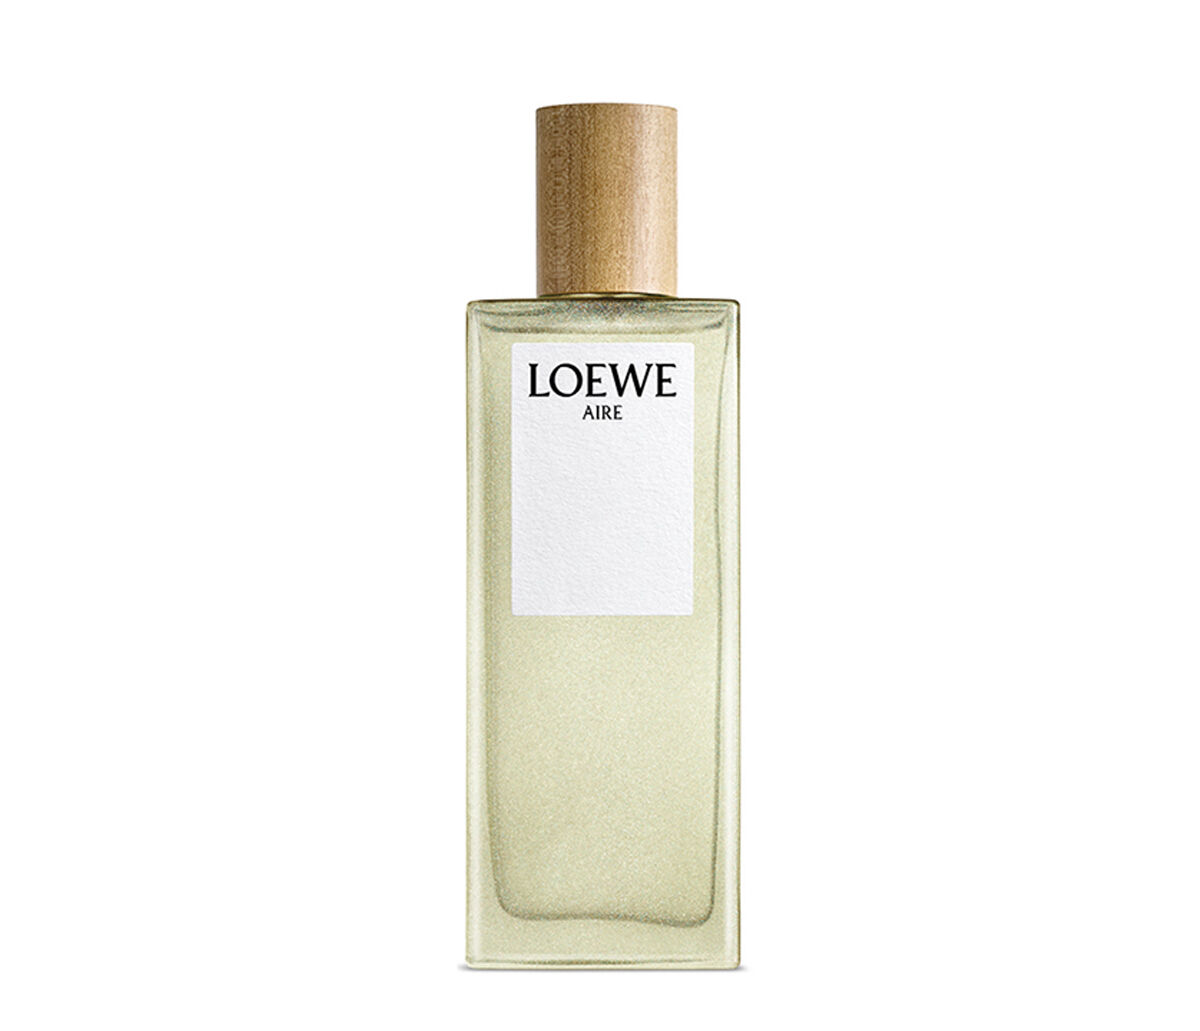 Buy online LOEWE Aire EDT | LOEWE Perfumes